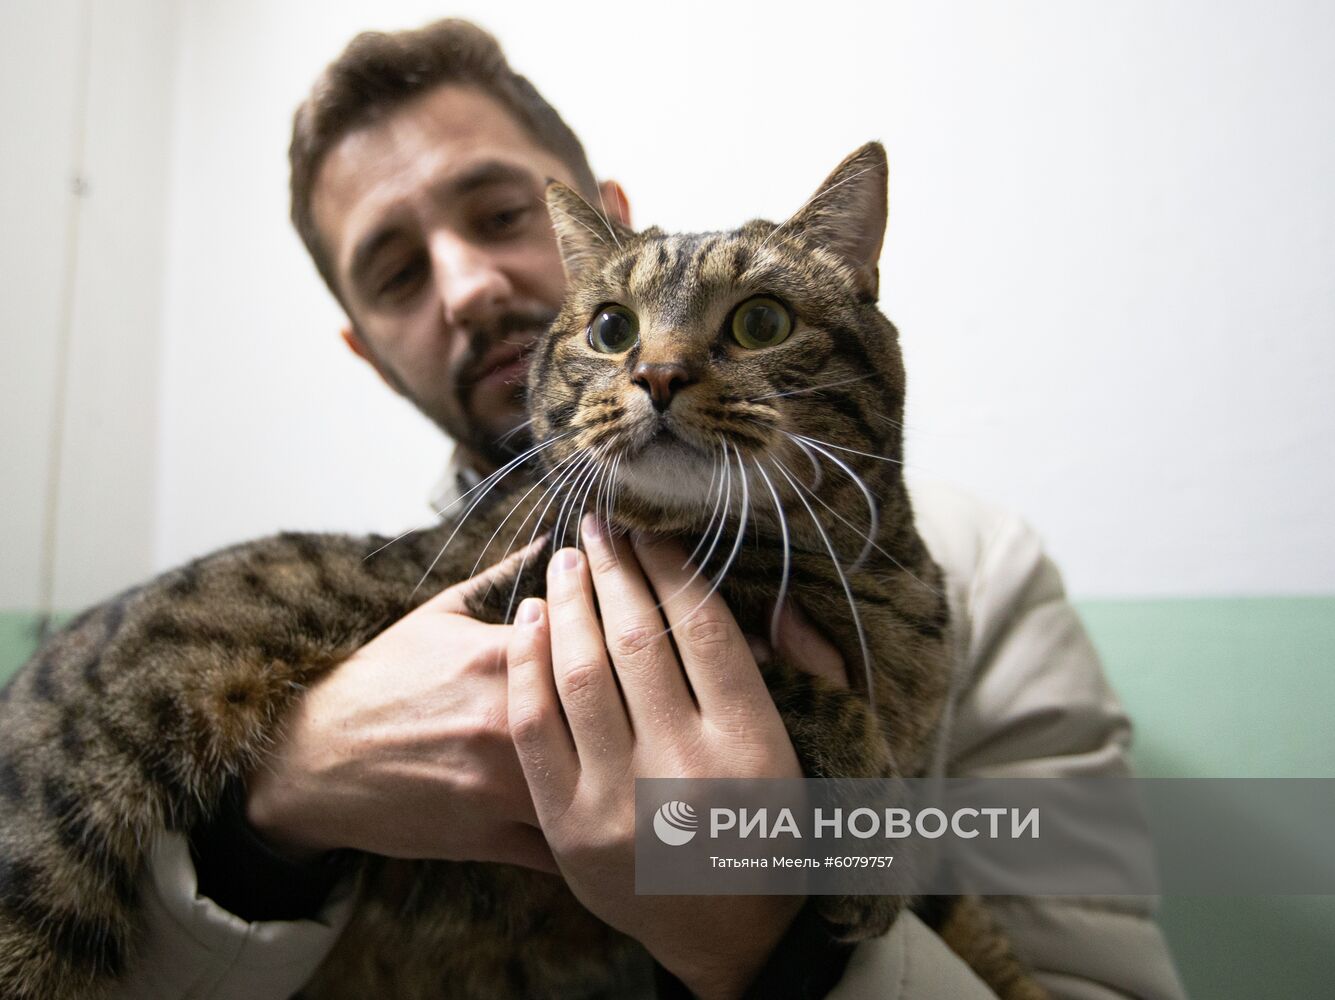 Владелец кота Виктора может стать акционером "Аэрофлота"